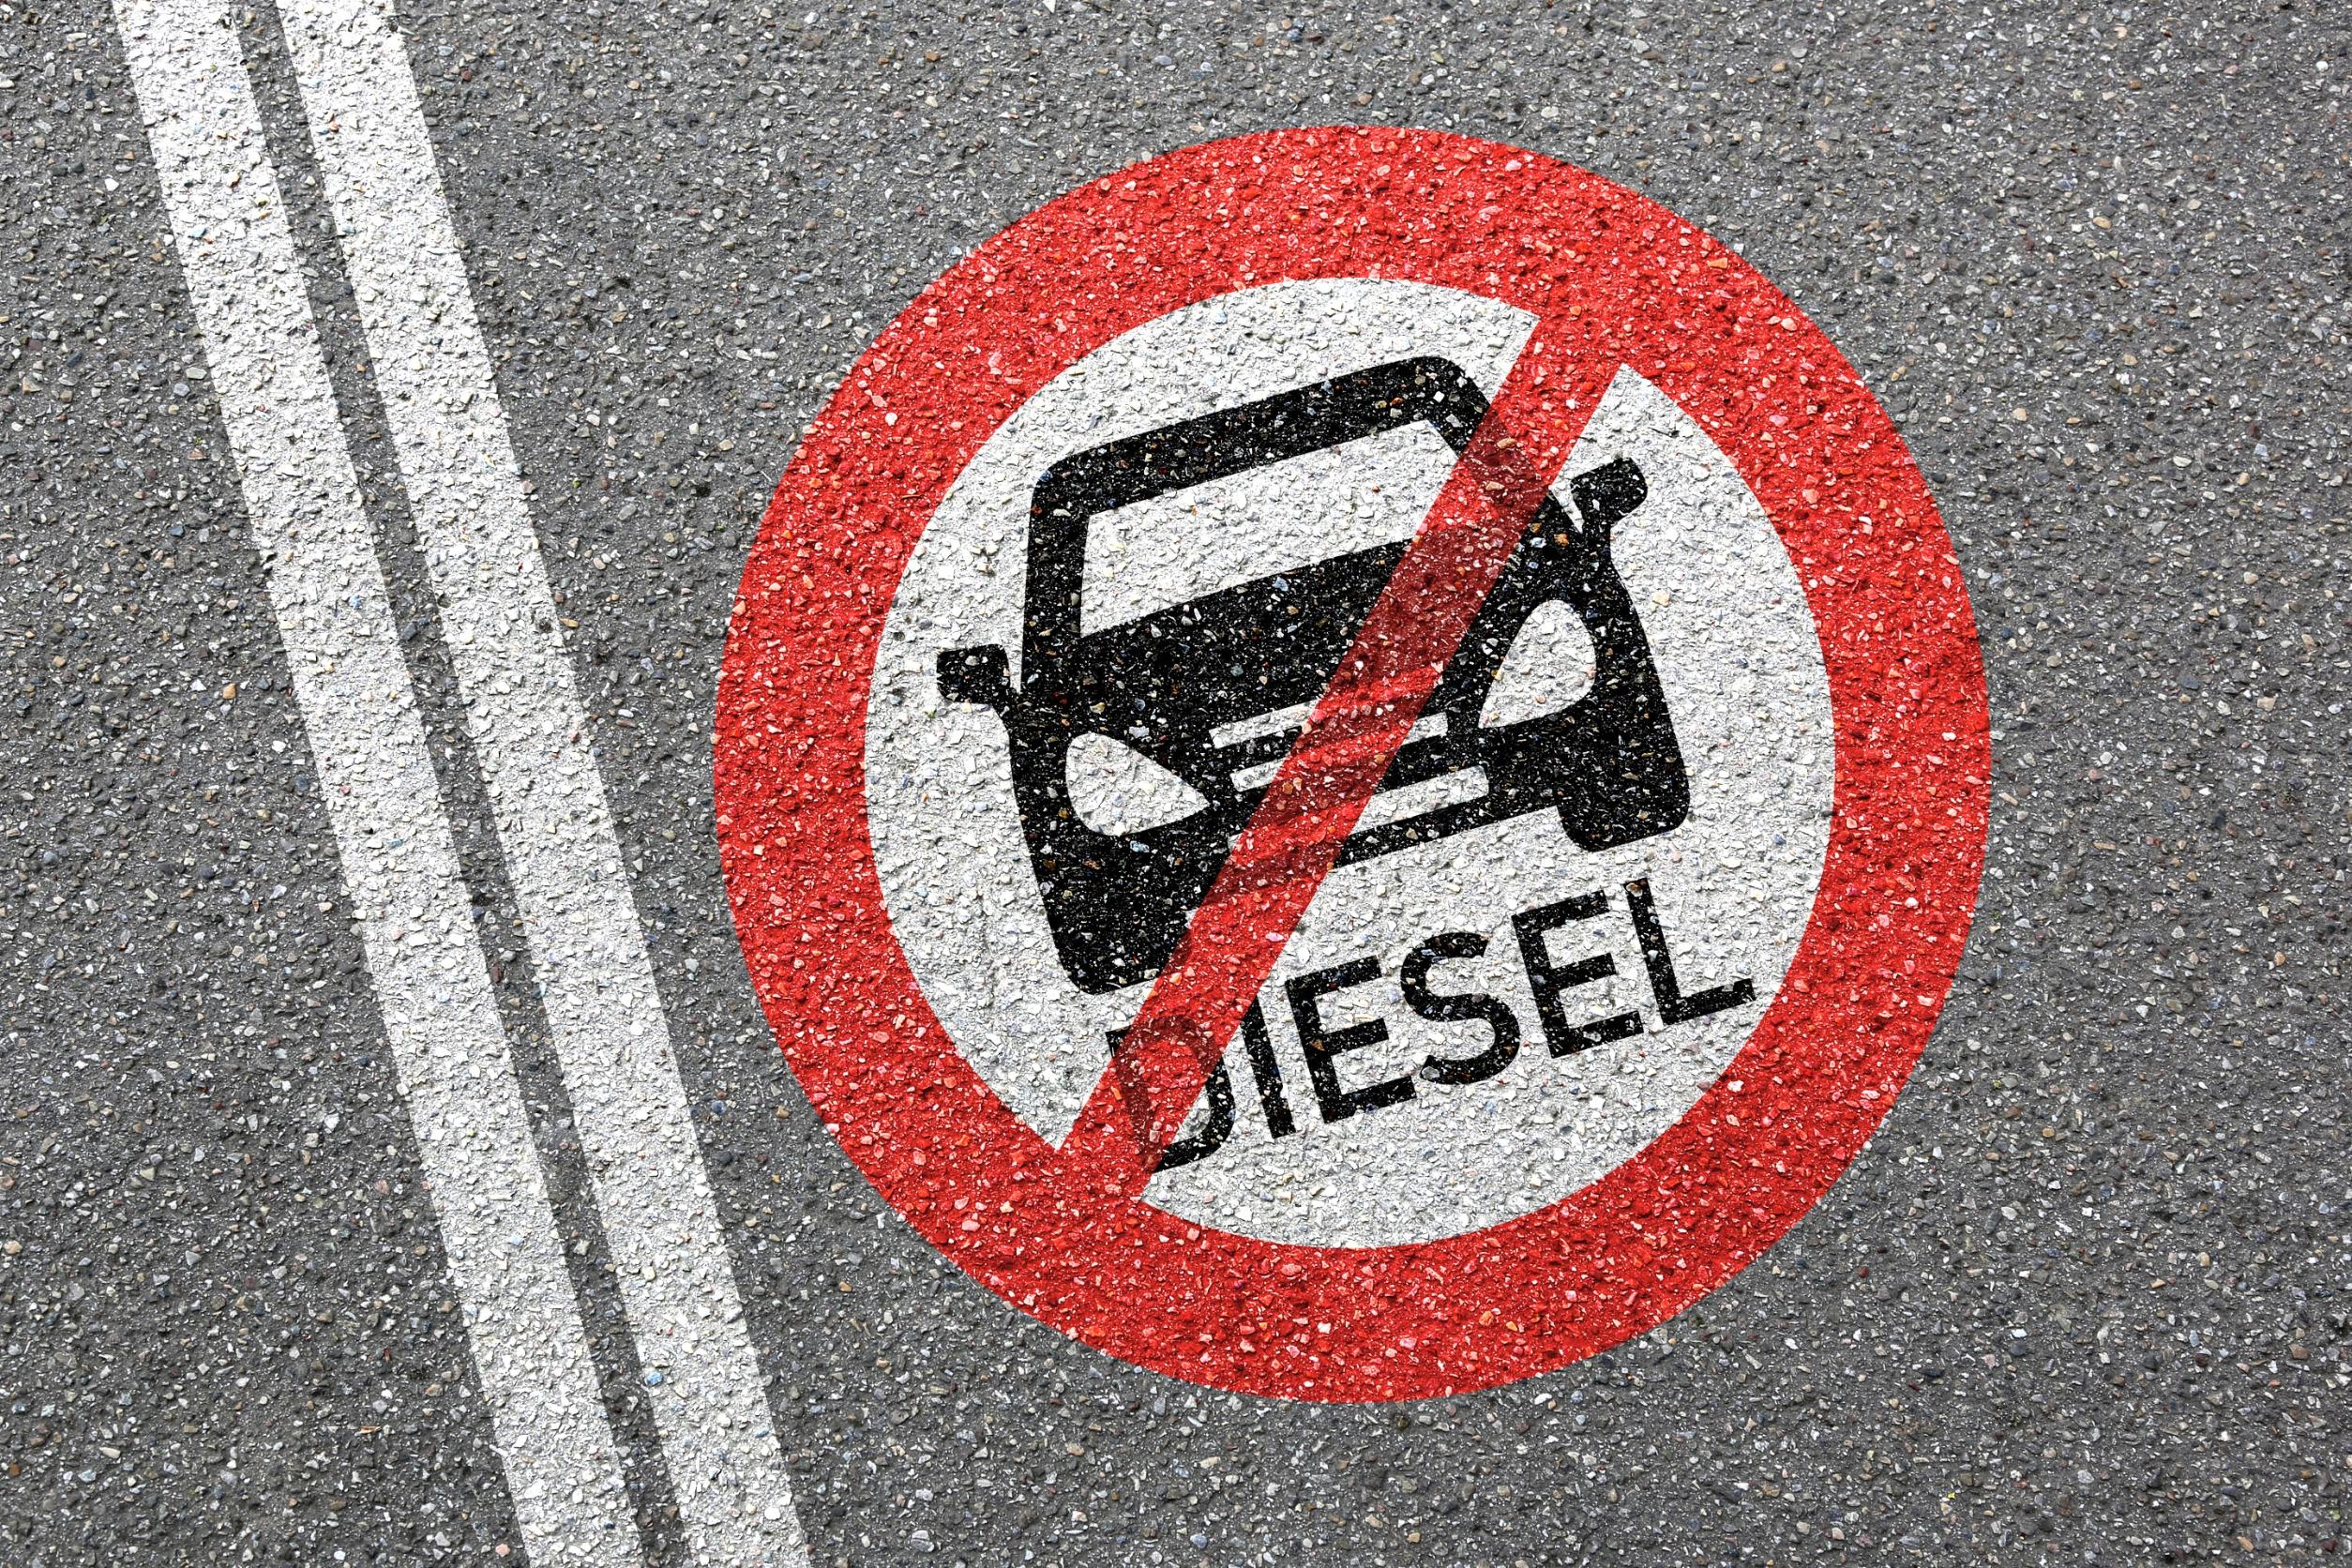 Blocco diesel Euro 6: quali città vieteranno le auto a gasolio?